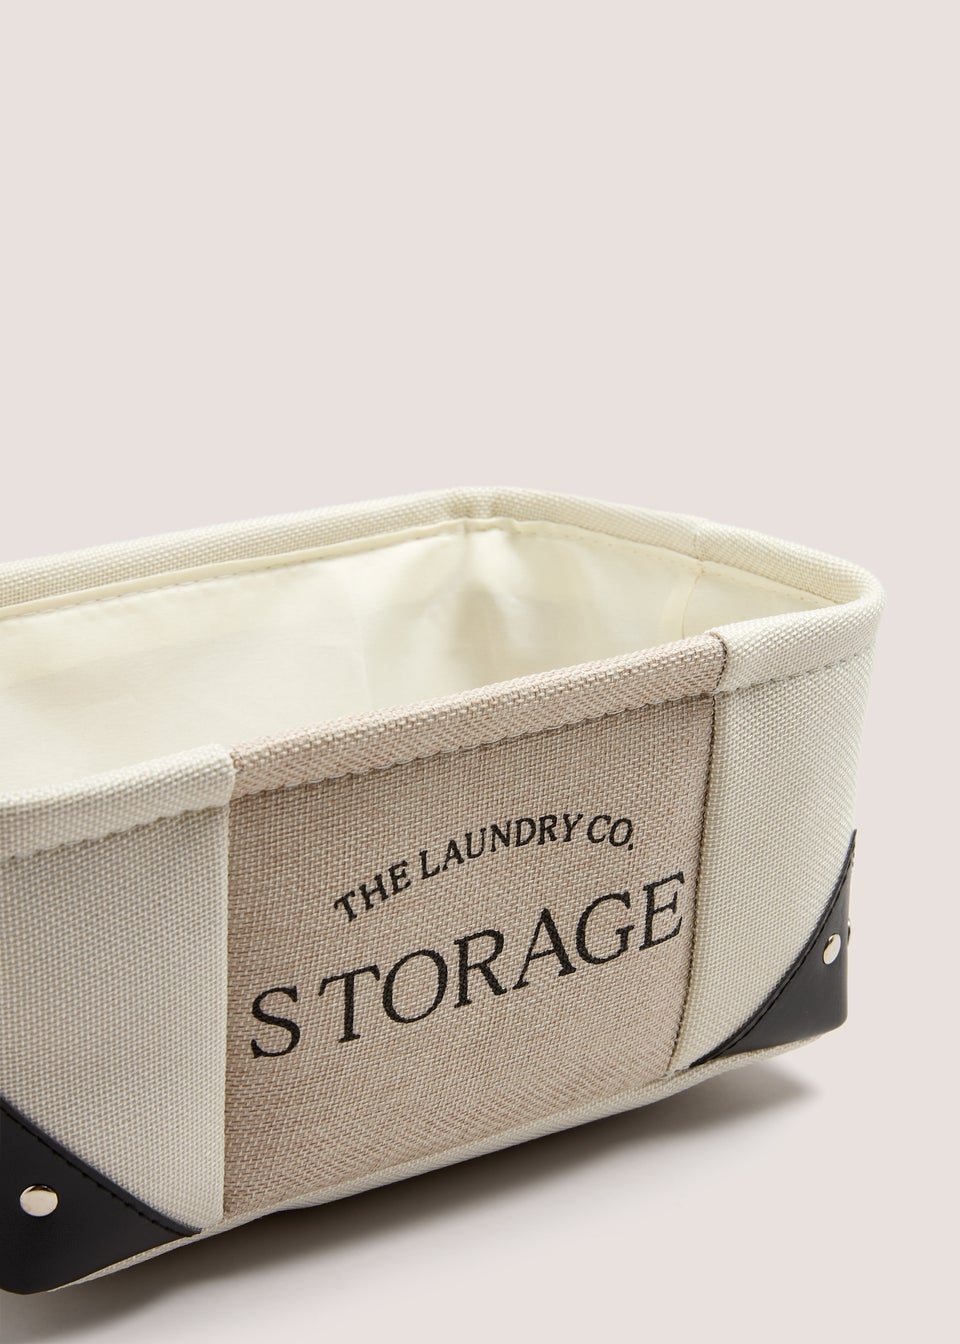 Laundry Co Fabric Storage Box (55x30x13cm)